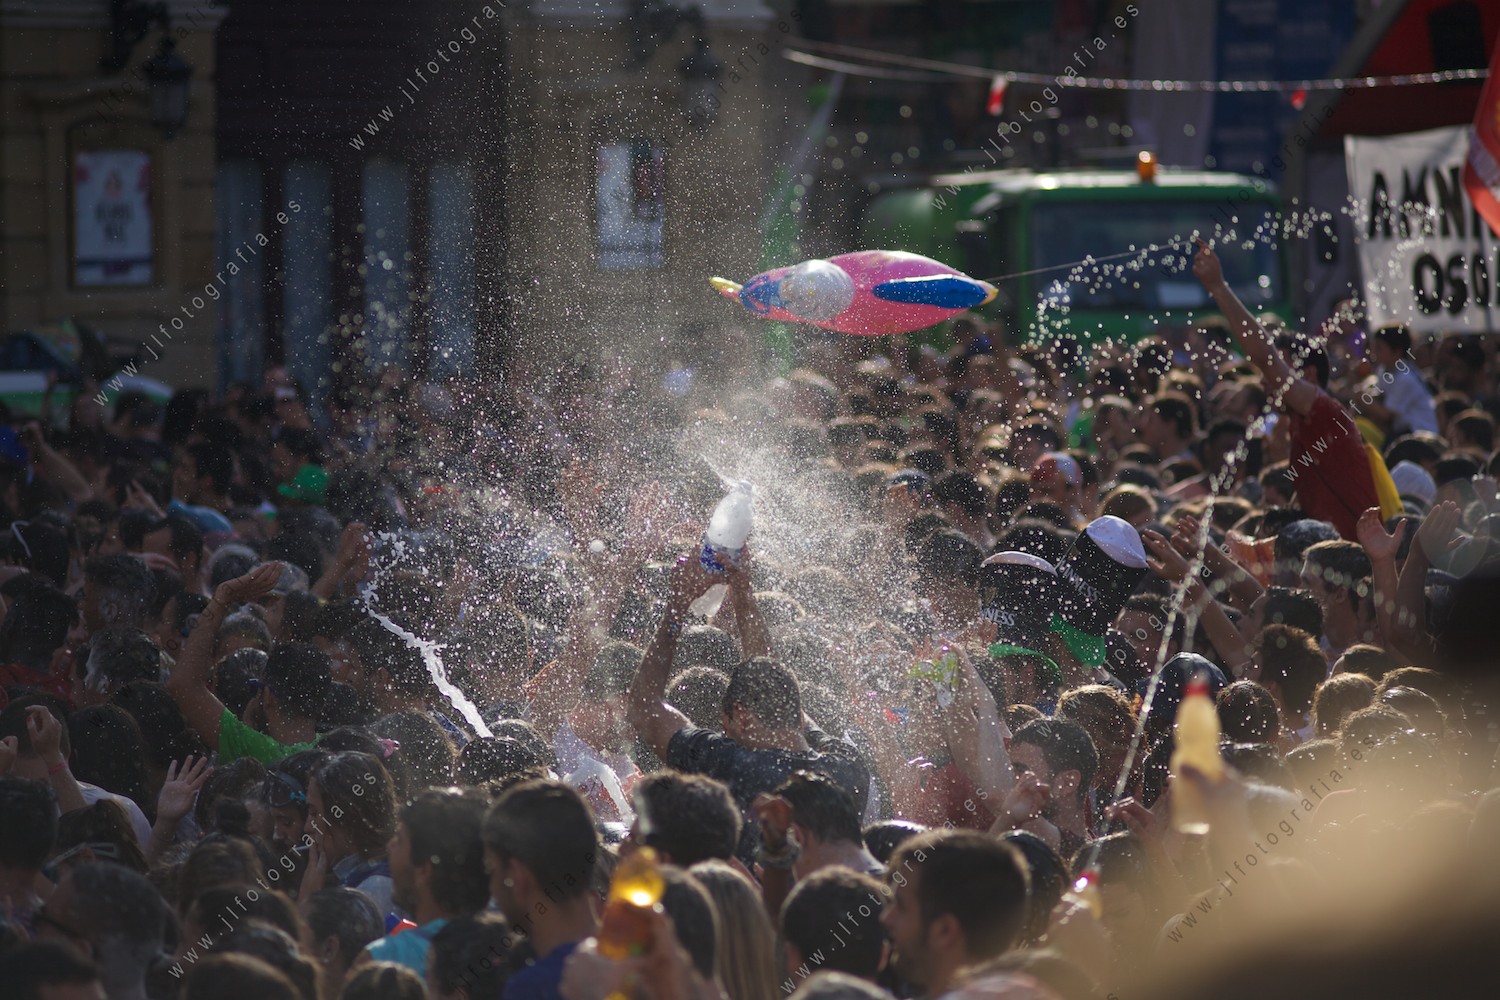 Momentos previos al txupinazo de Aste Nagusia de Bilbao, los jóvenes riegan de vinagre la harina y huevos que se lanzan.